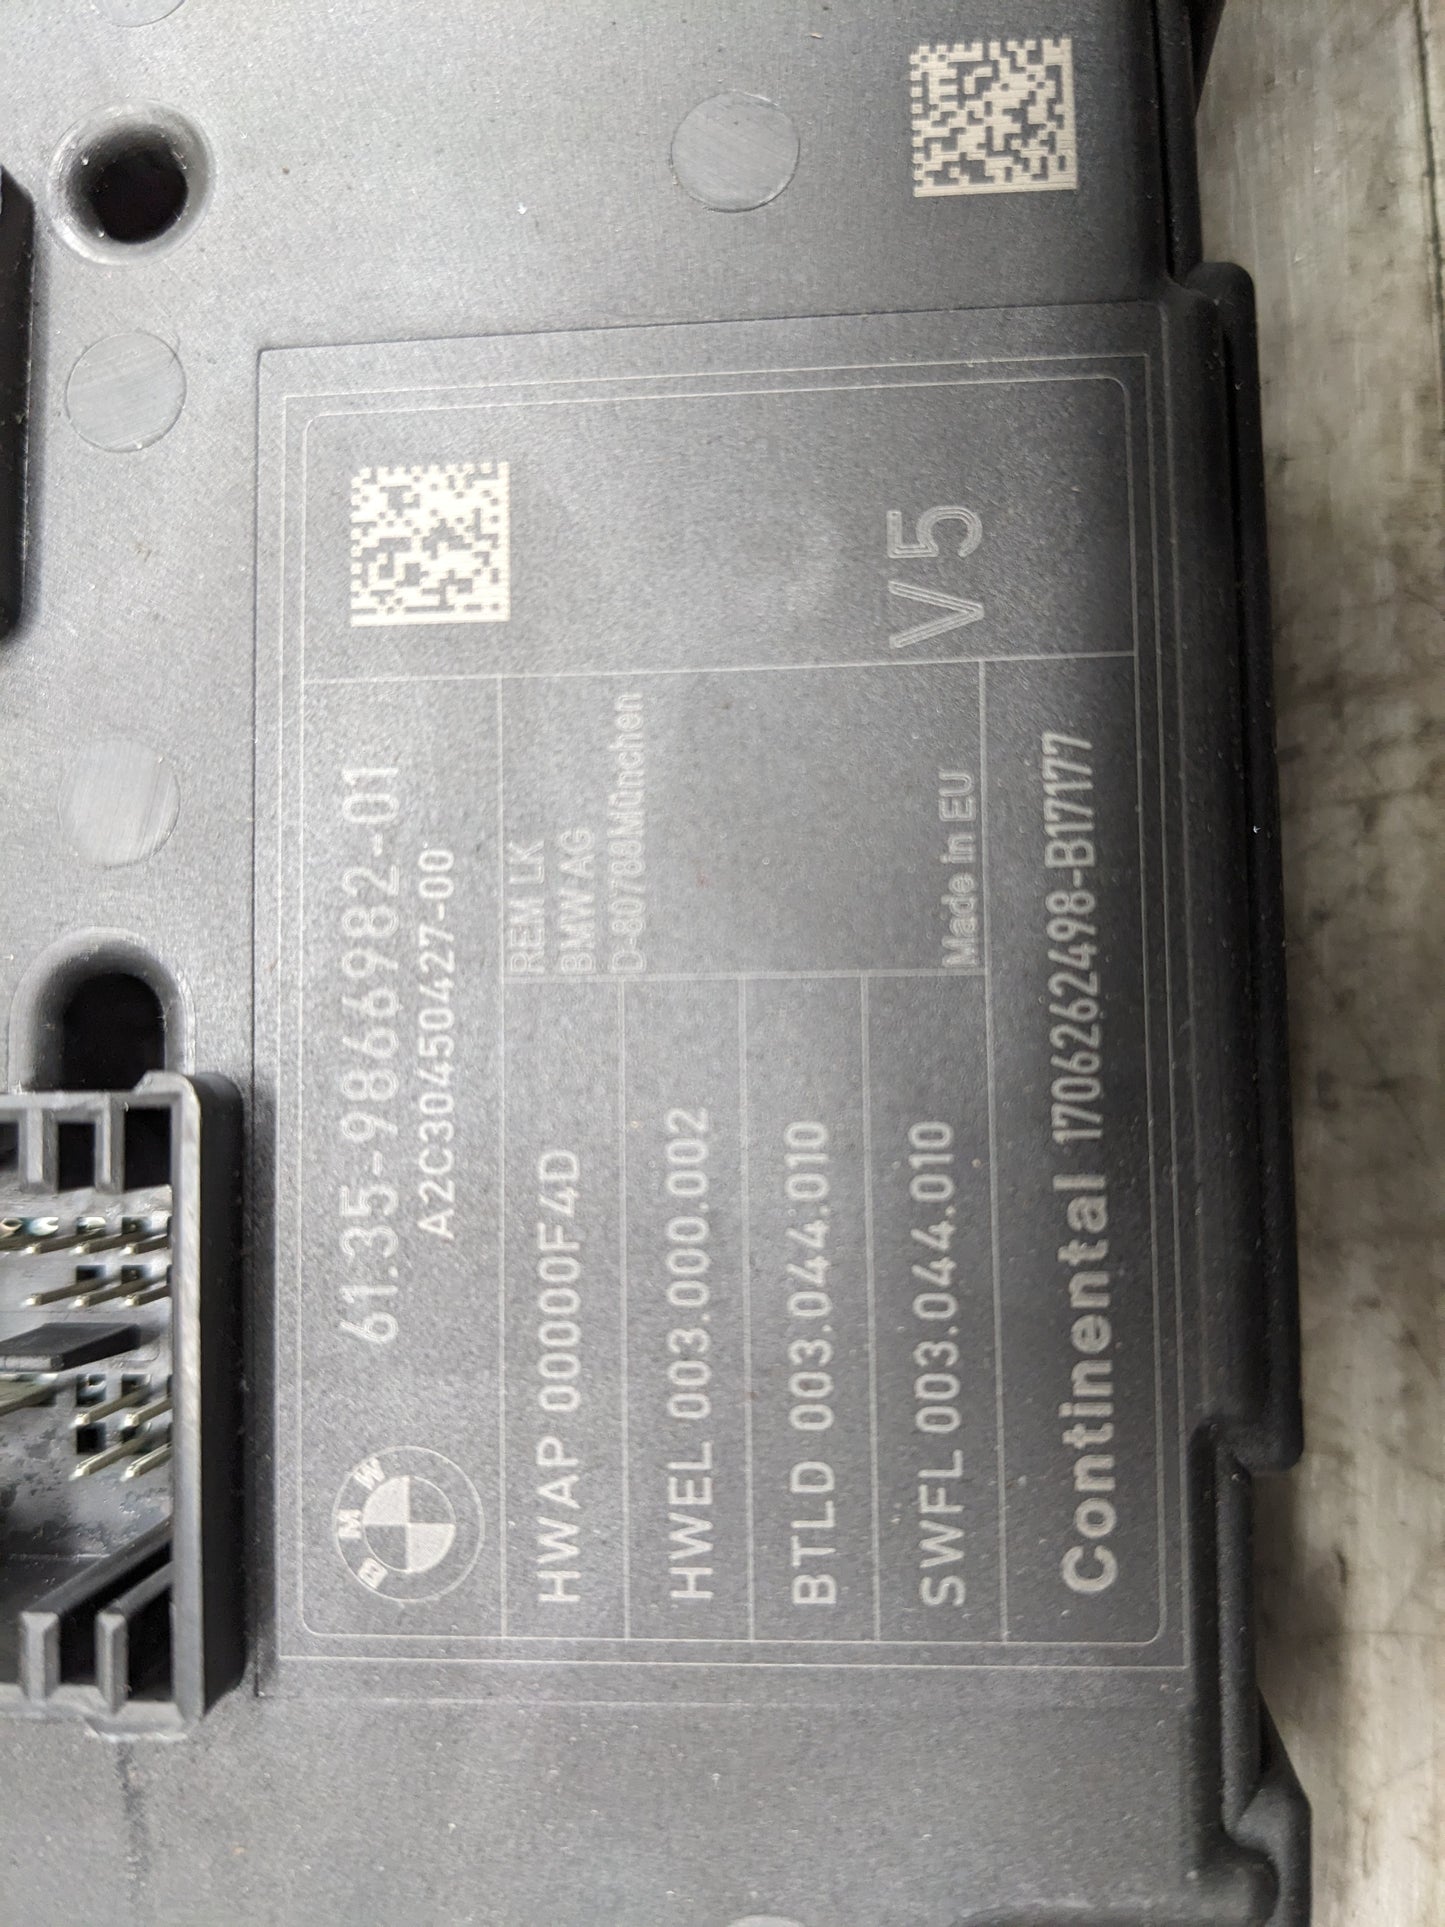 12-20 OEM BMW F22 F30 F82 REM Rear Body Control Unit Electronic Module BCM Box